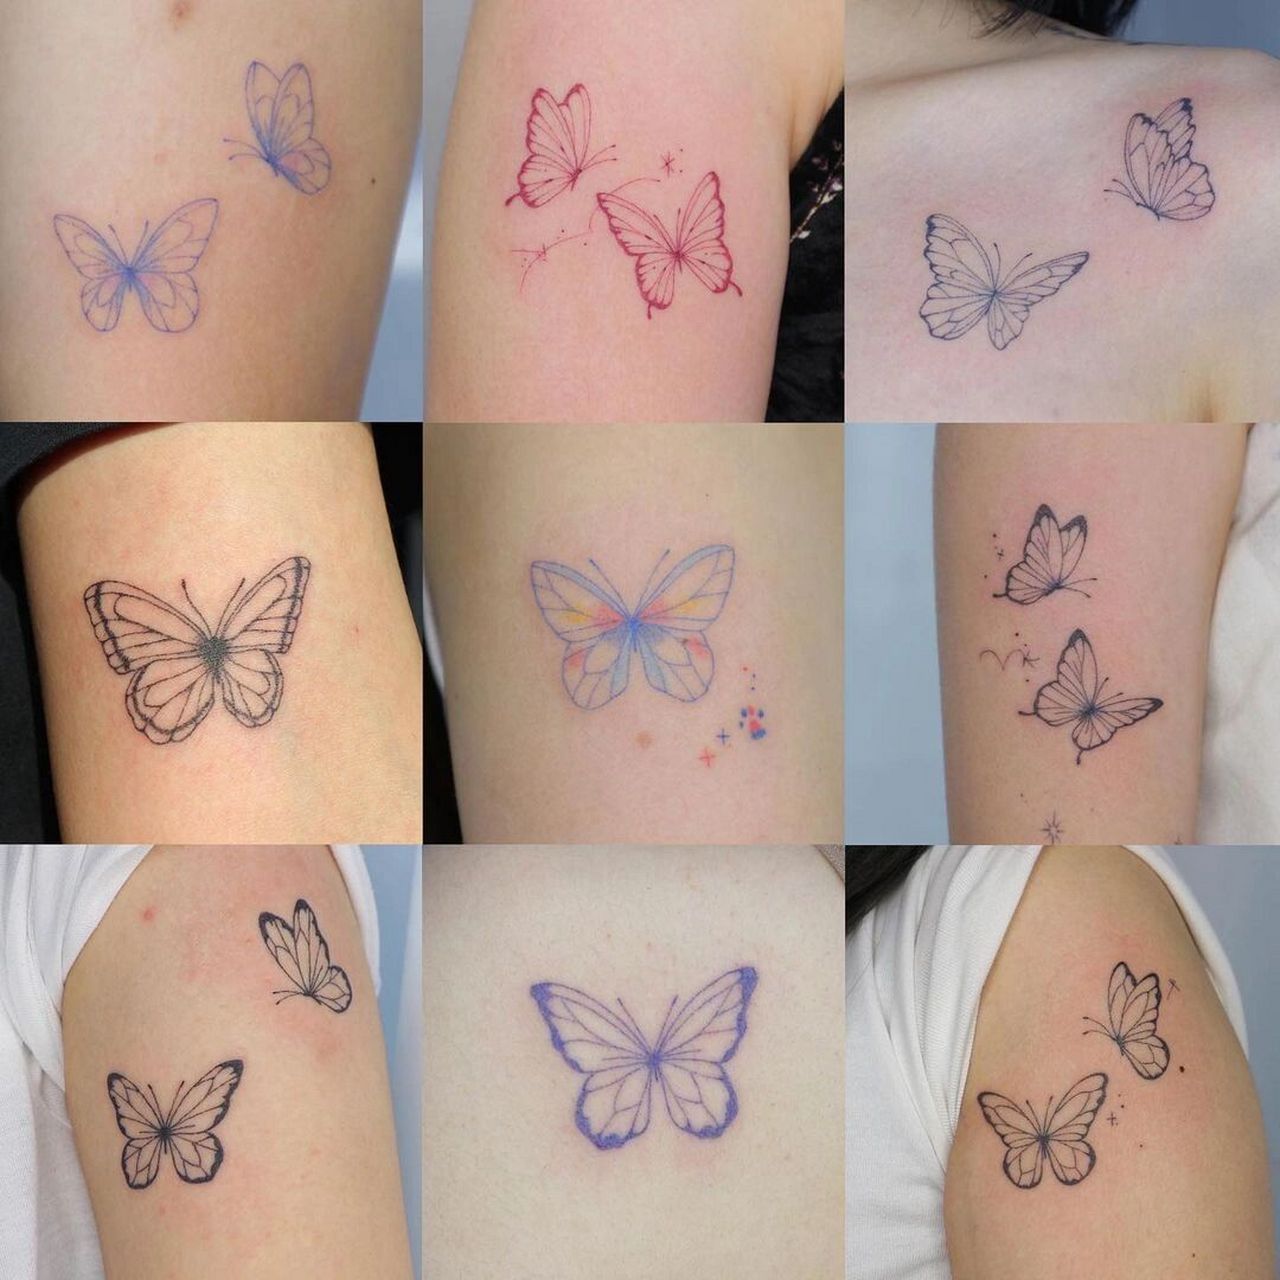 喜欢的就保存吧女生纹身小图案,蝴蝶纹身图案分享